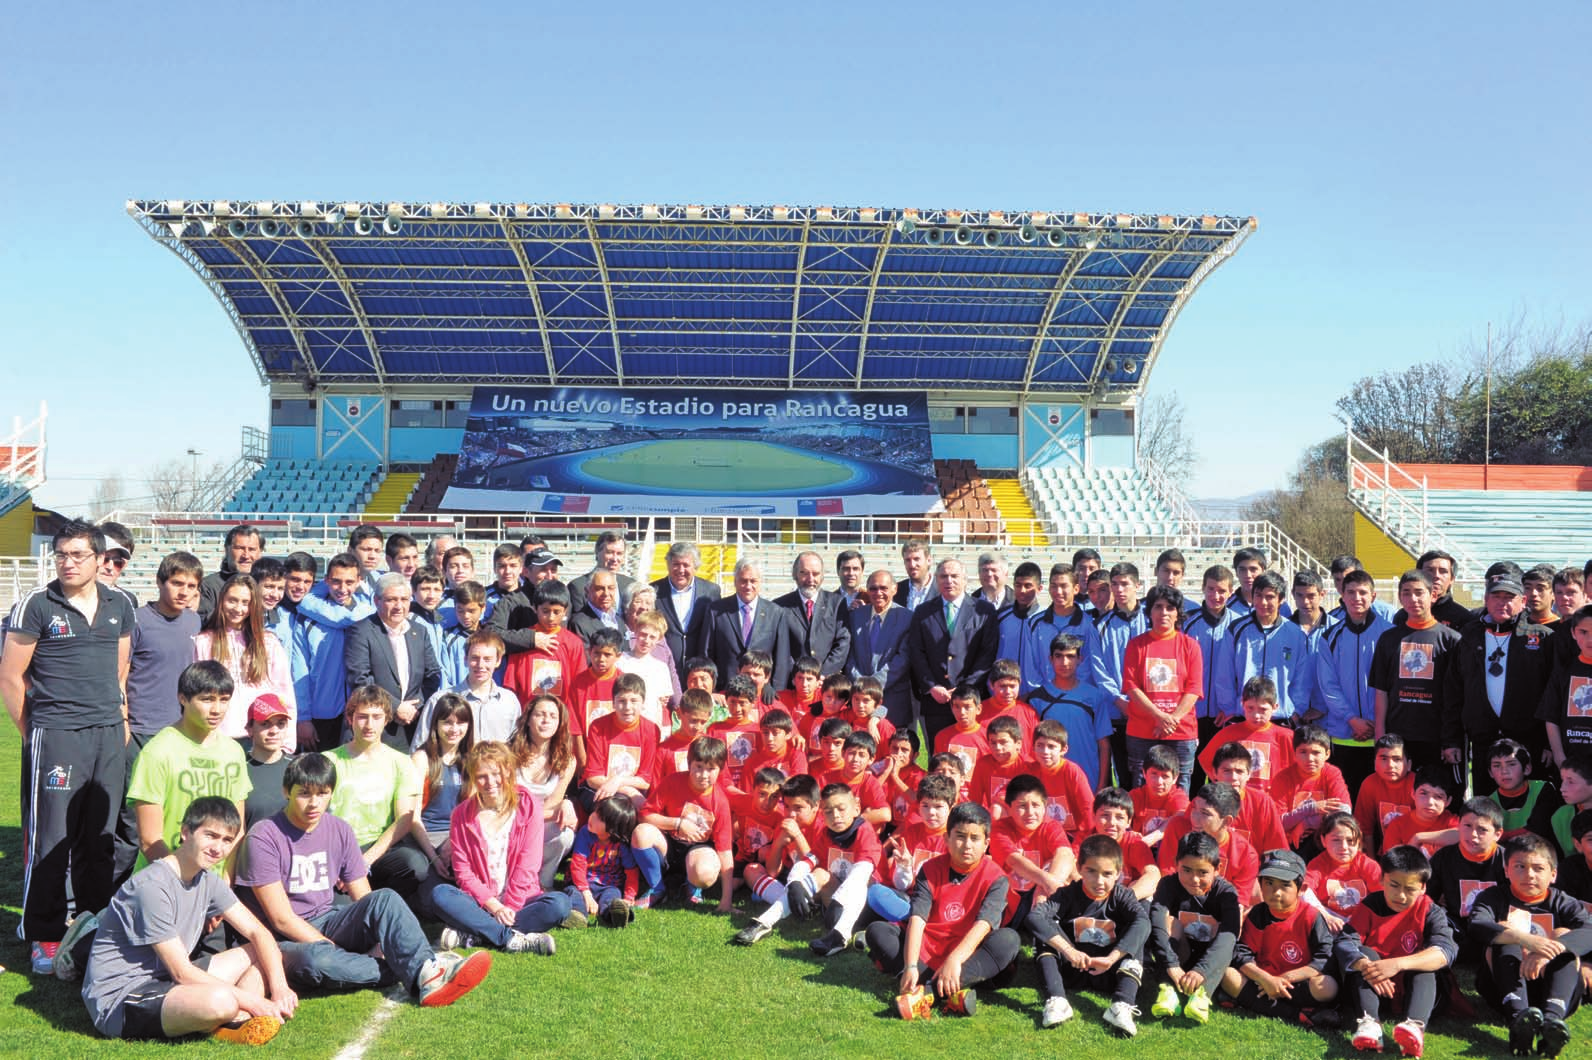 El Presidente de la República, Sebastián Piñera, dio a conocer los detalles de la remodelación del Estadio El Teniente de Rancagua, iniciativa del programa Legado Bicentenario.